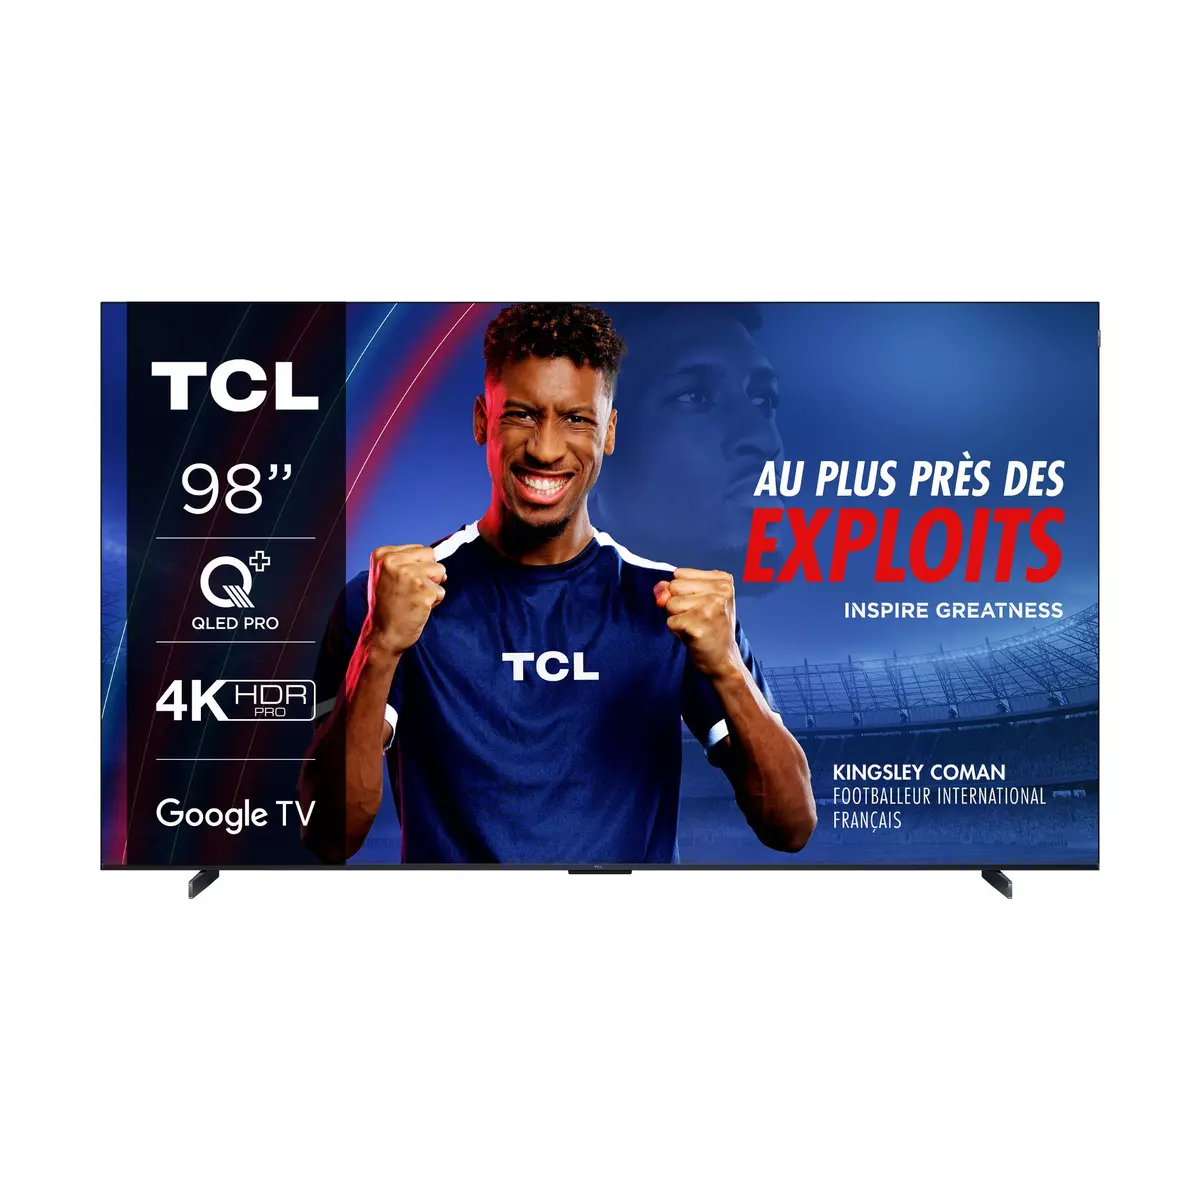 TCL TV QLED Pro 98C69B